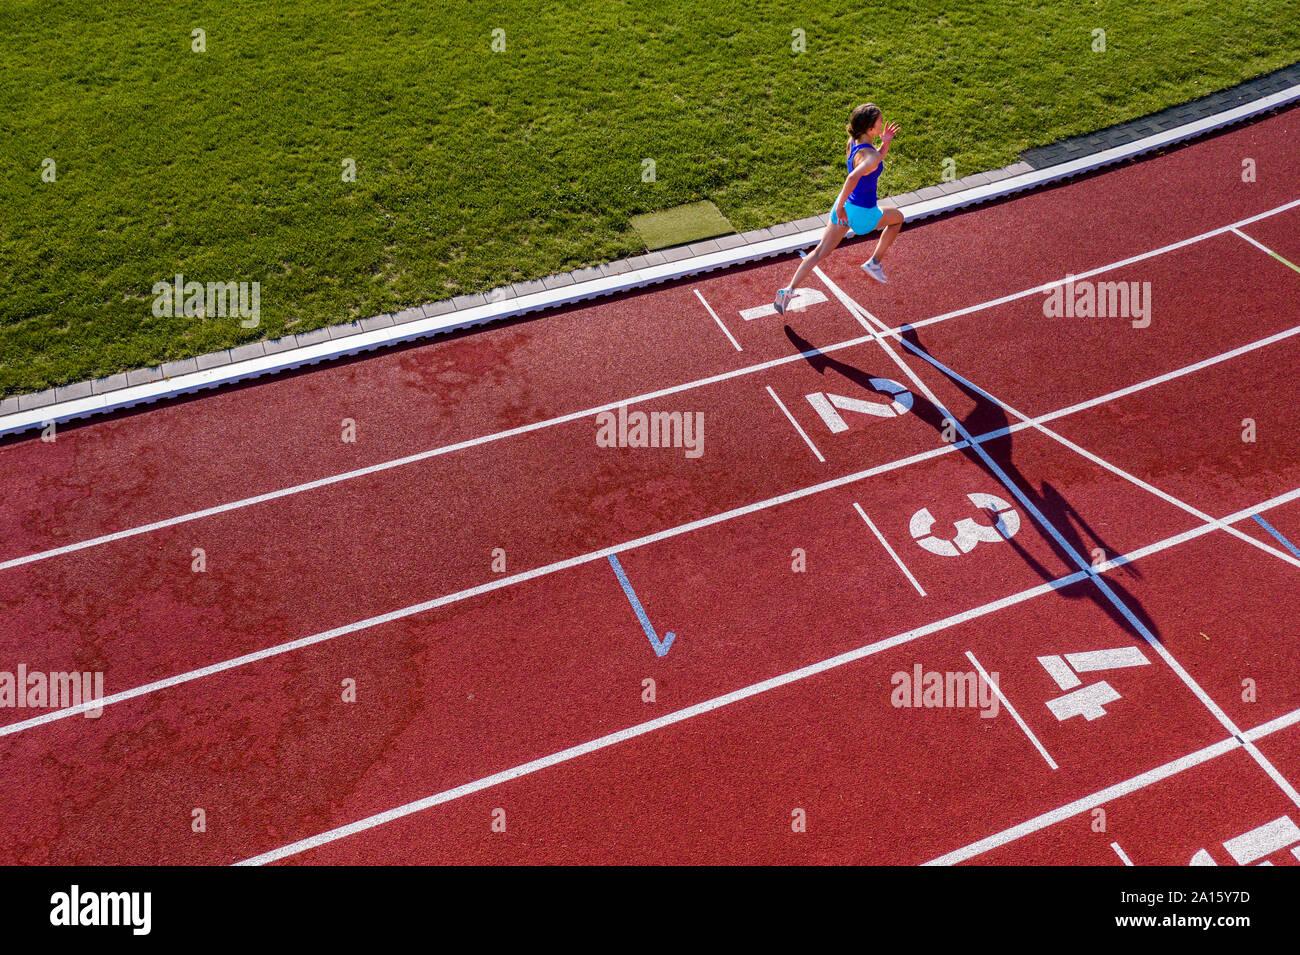 Luftaufnahme eines laufenden jungen weiblichen Athleten auf einer tartanbahn Überschreiten der Ziellinie Stockfoto